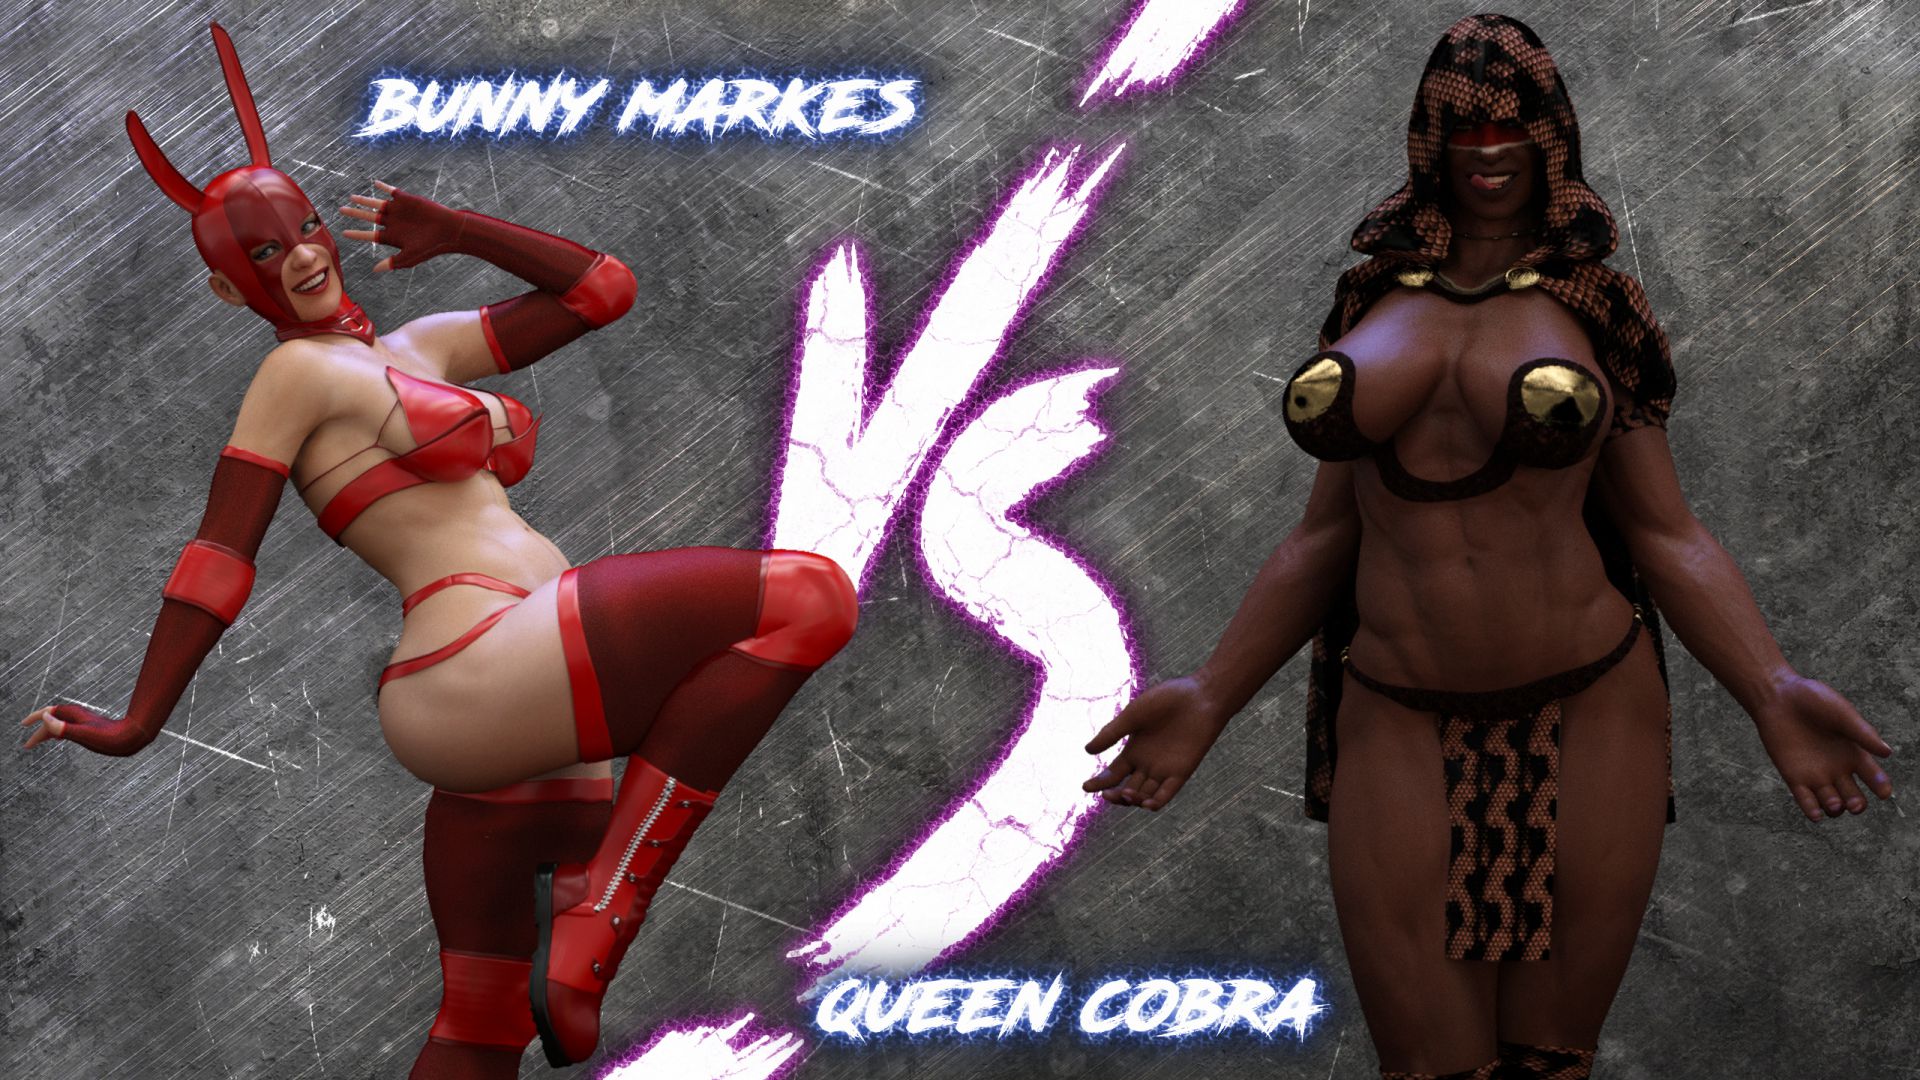 Squarepeg3d outside the ring bunny vs queen cobra porn comics